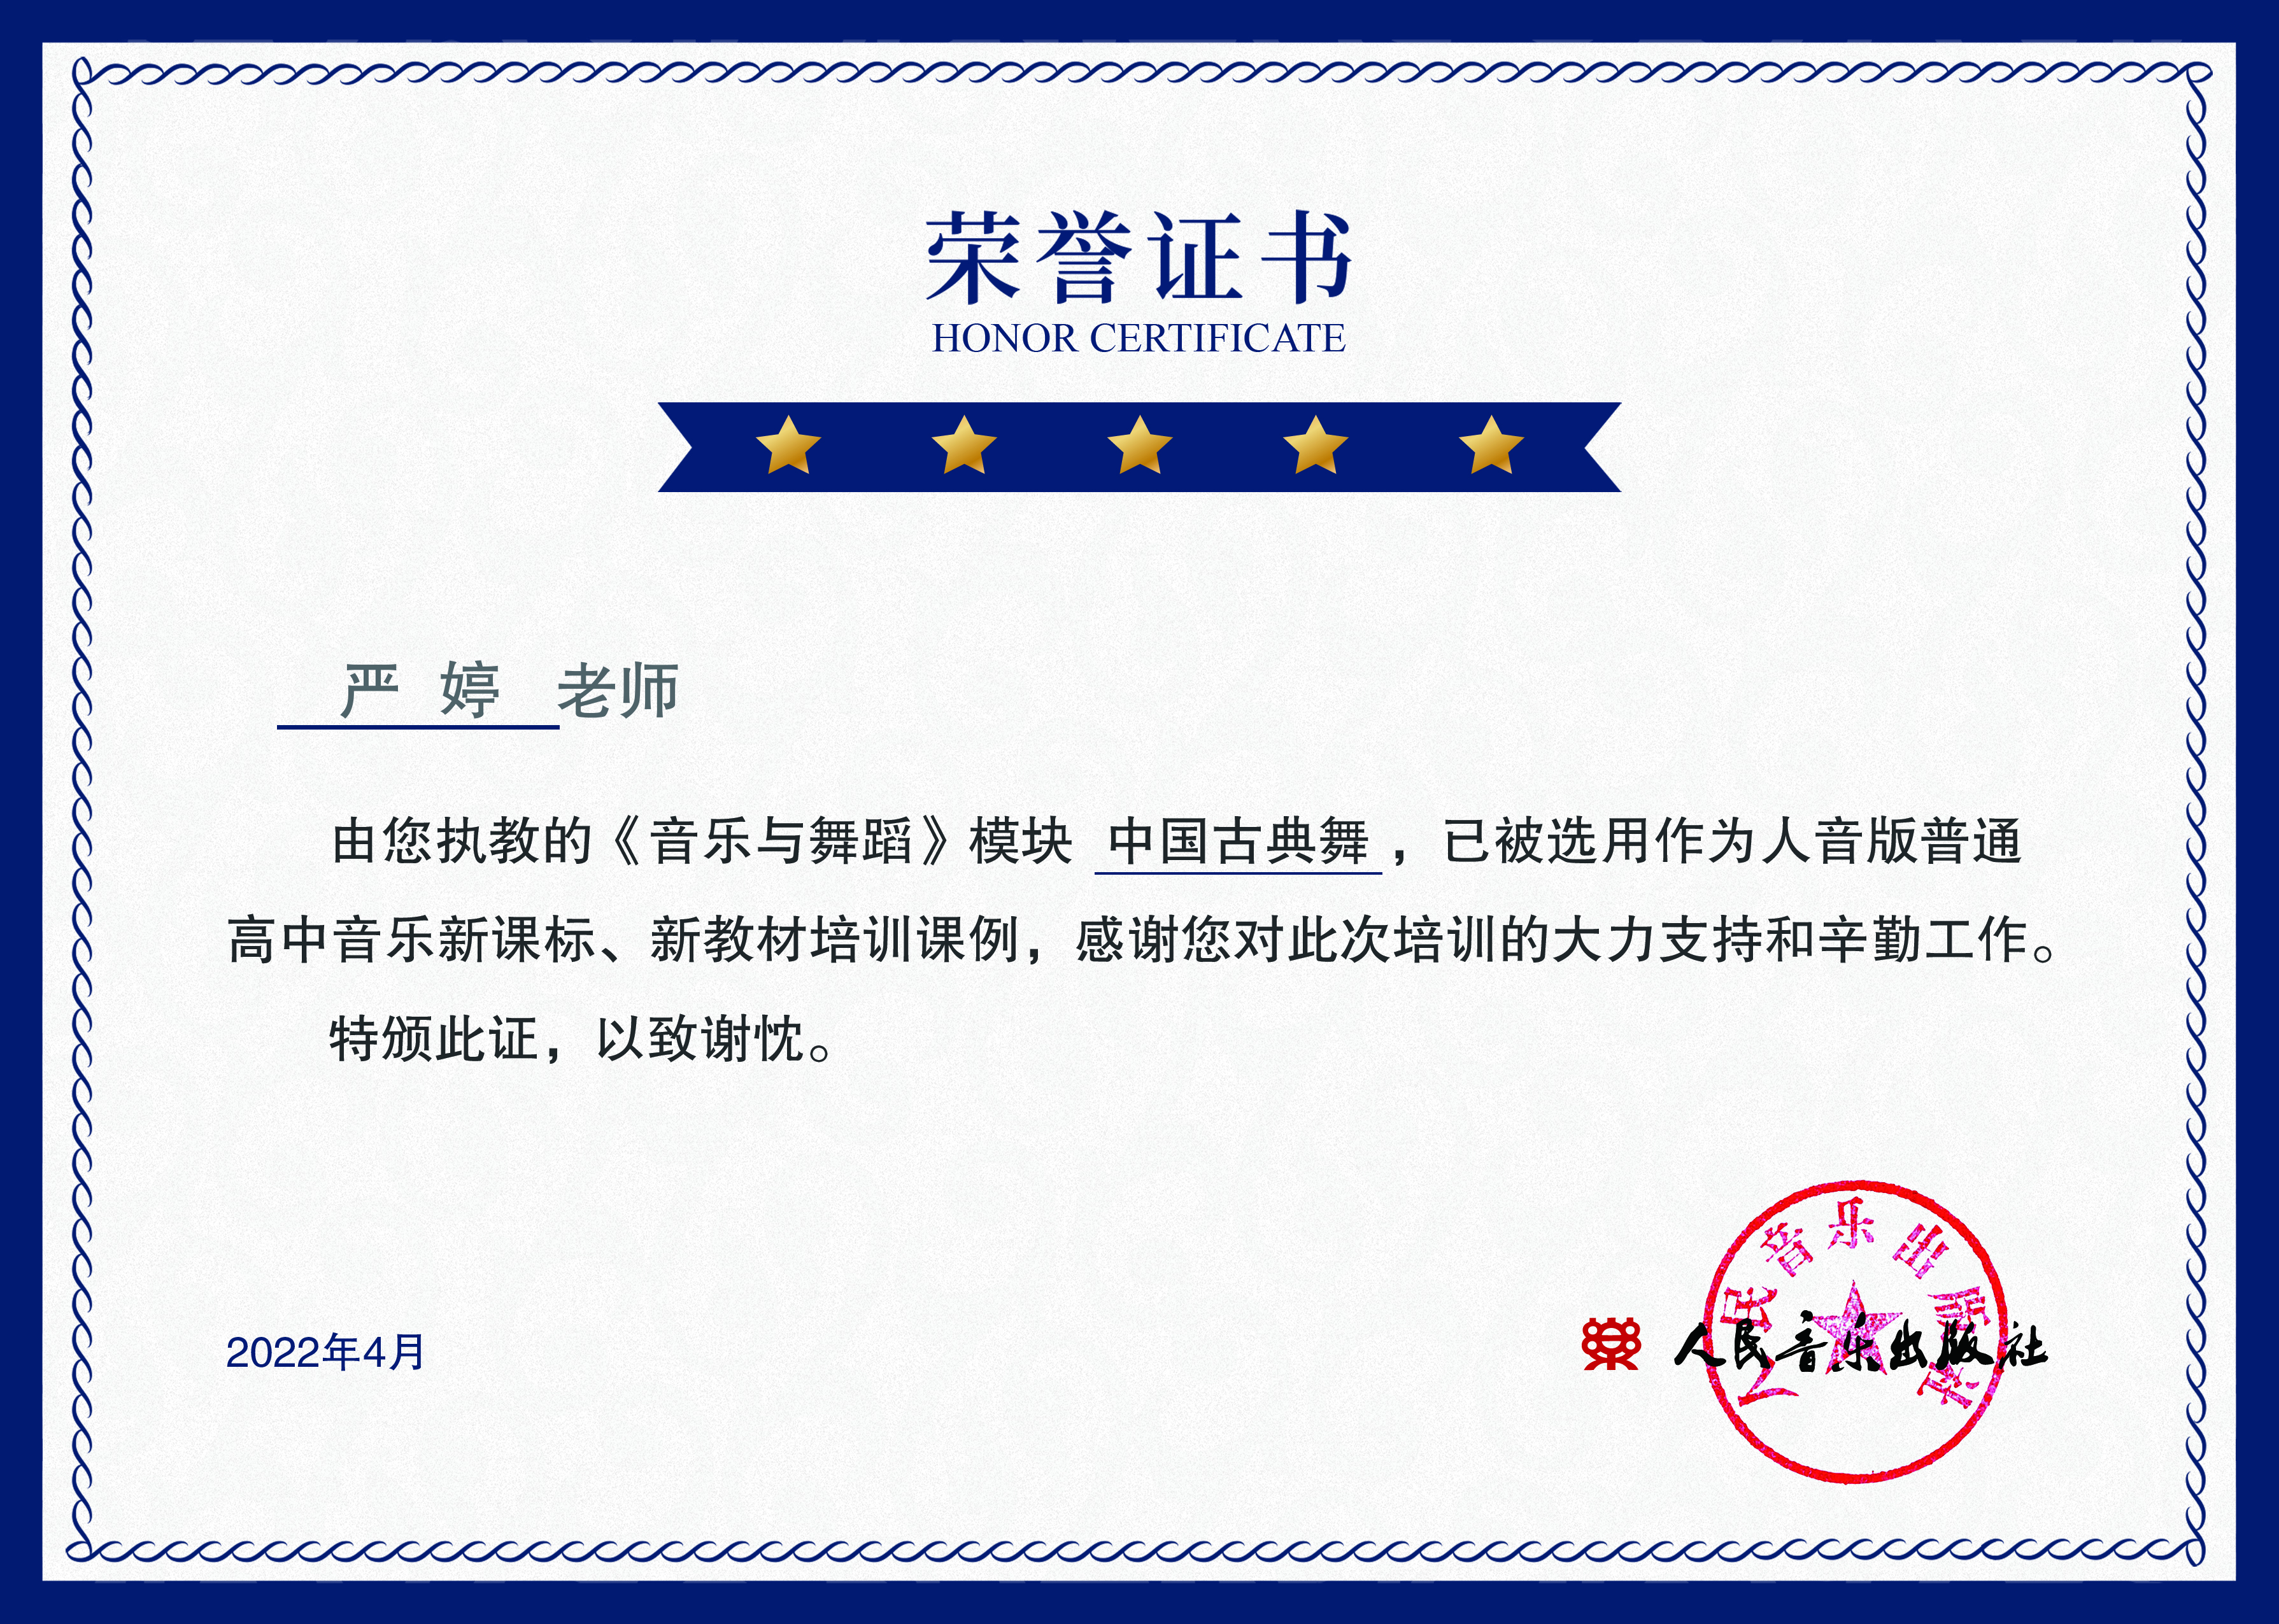 人音社 音乐舞蹈模块 中国古典舞  示范课例证书.jpg